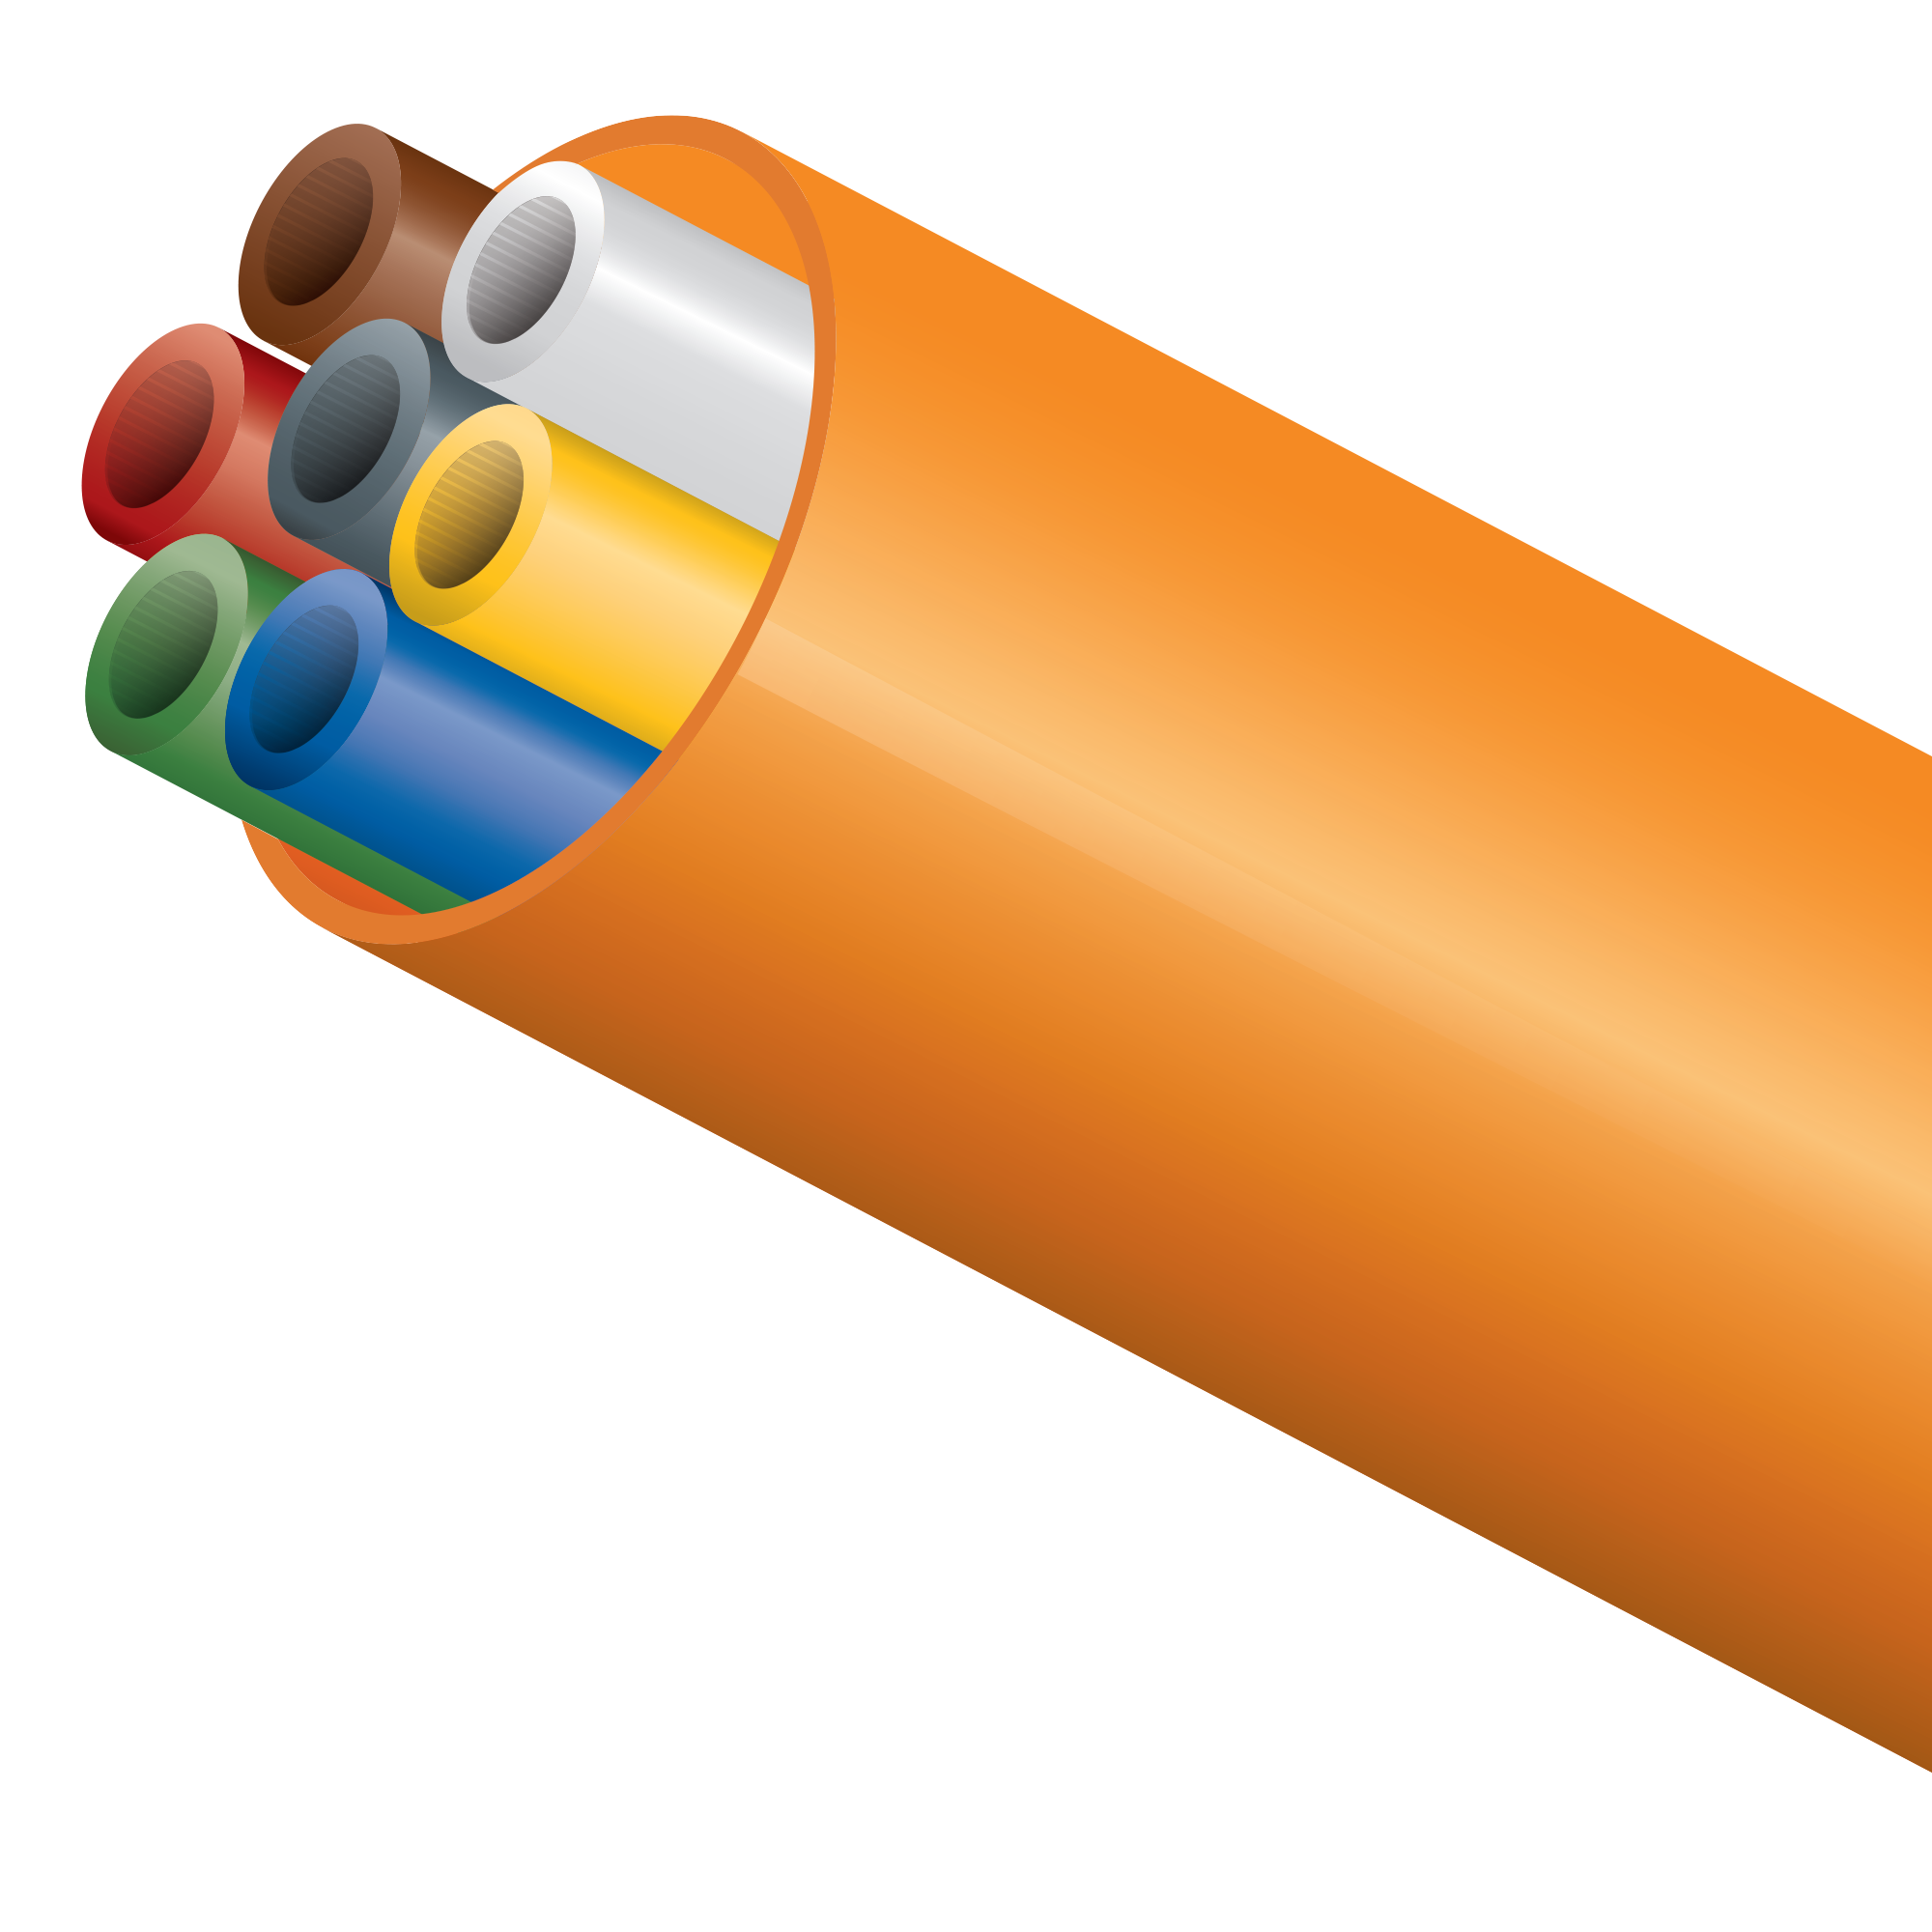 Le DuraPack combine des microtubes DI, pré-installés en usine dans un conduit plus large. Les Microducts n'étant pas collés à la gaine, ce produit s'installe Les faisceaux lâches de Microducts dans un conduit. Les Microducts DI sont également disponibles avec une configuration « plus serrée » dotée d’une gaine supplémentaire, gage d’une protection supérieure.